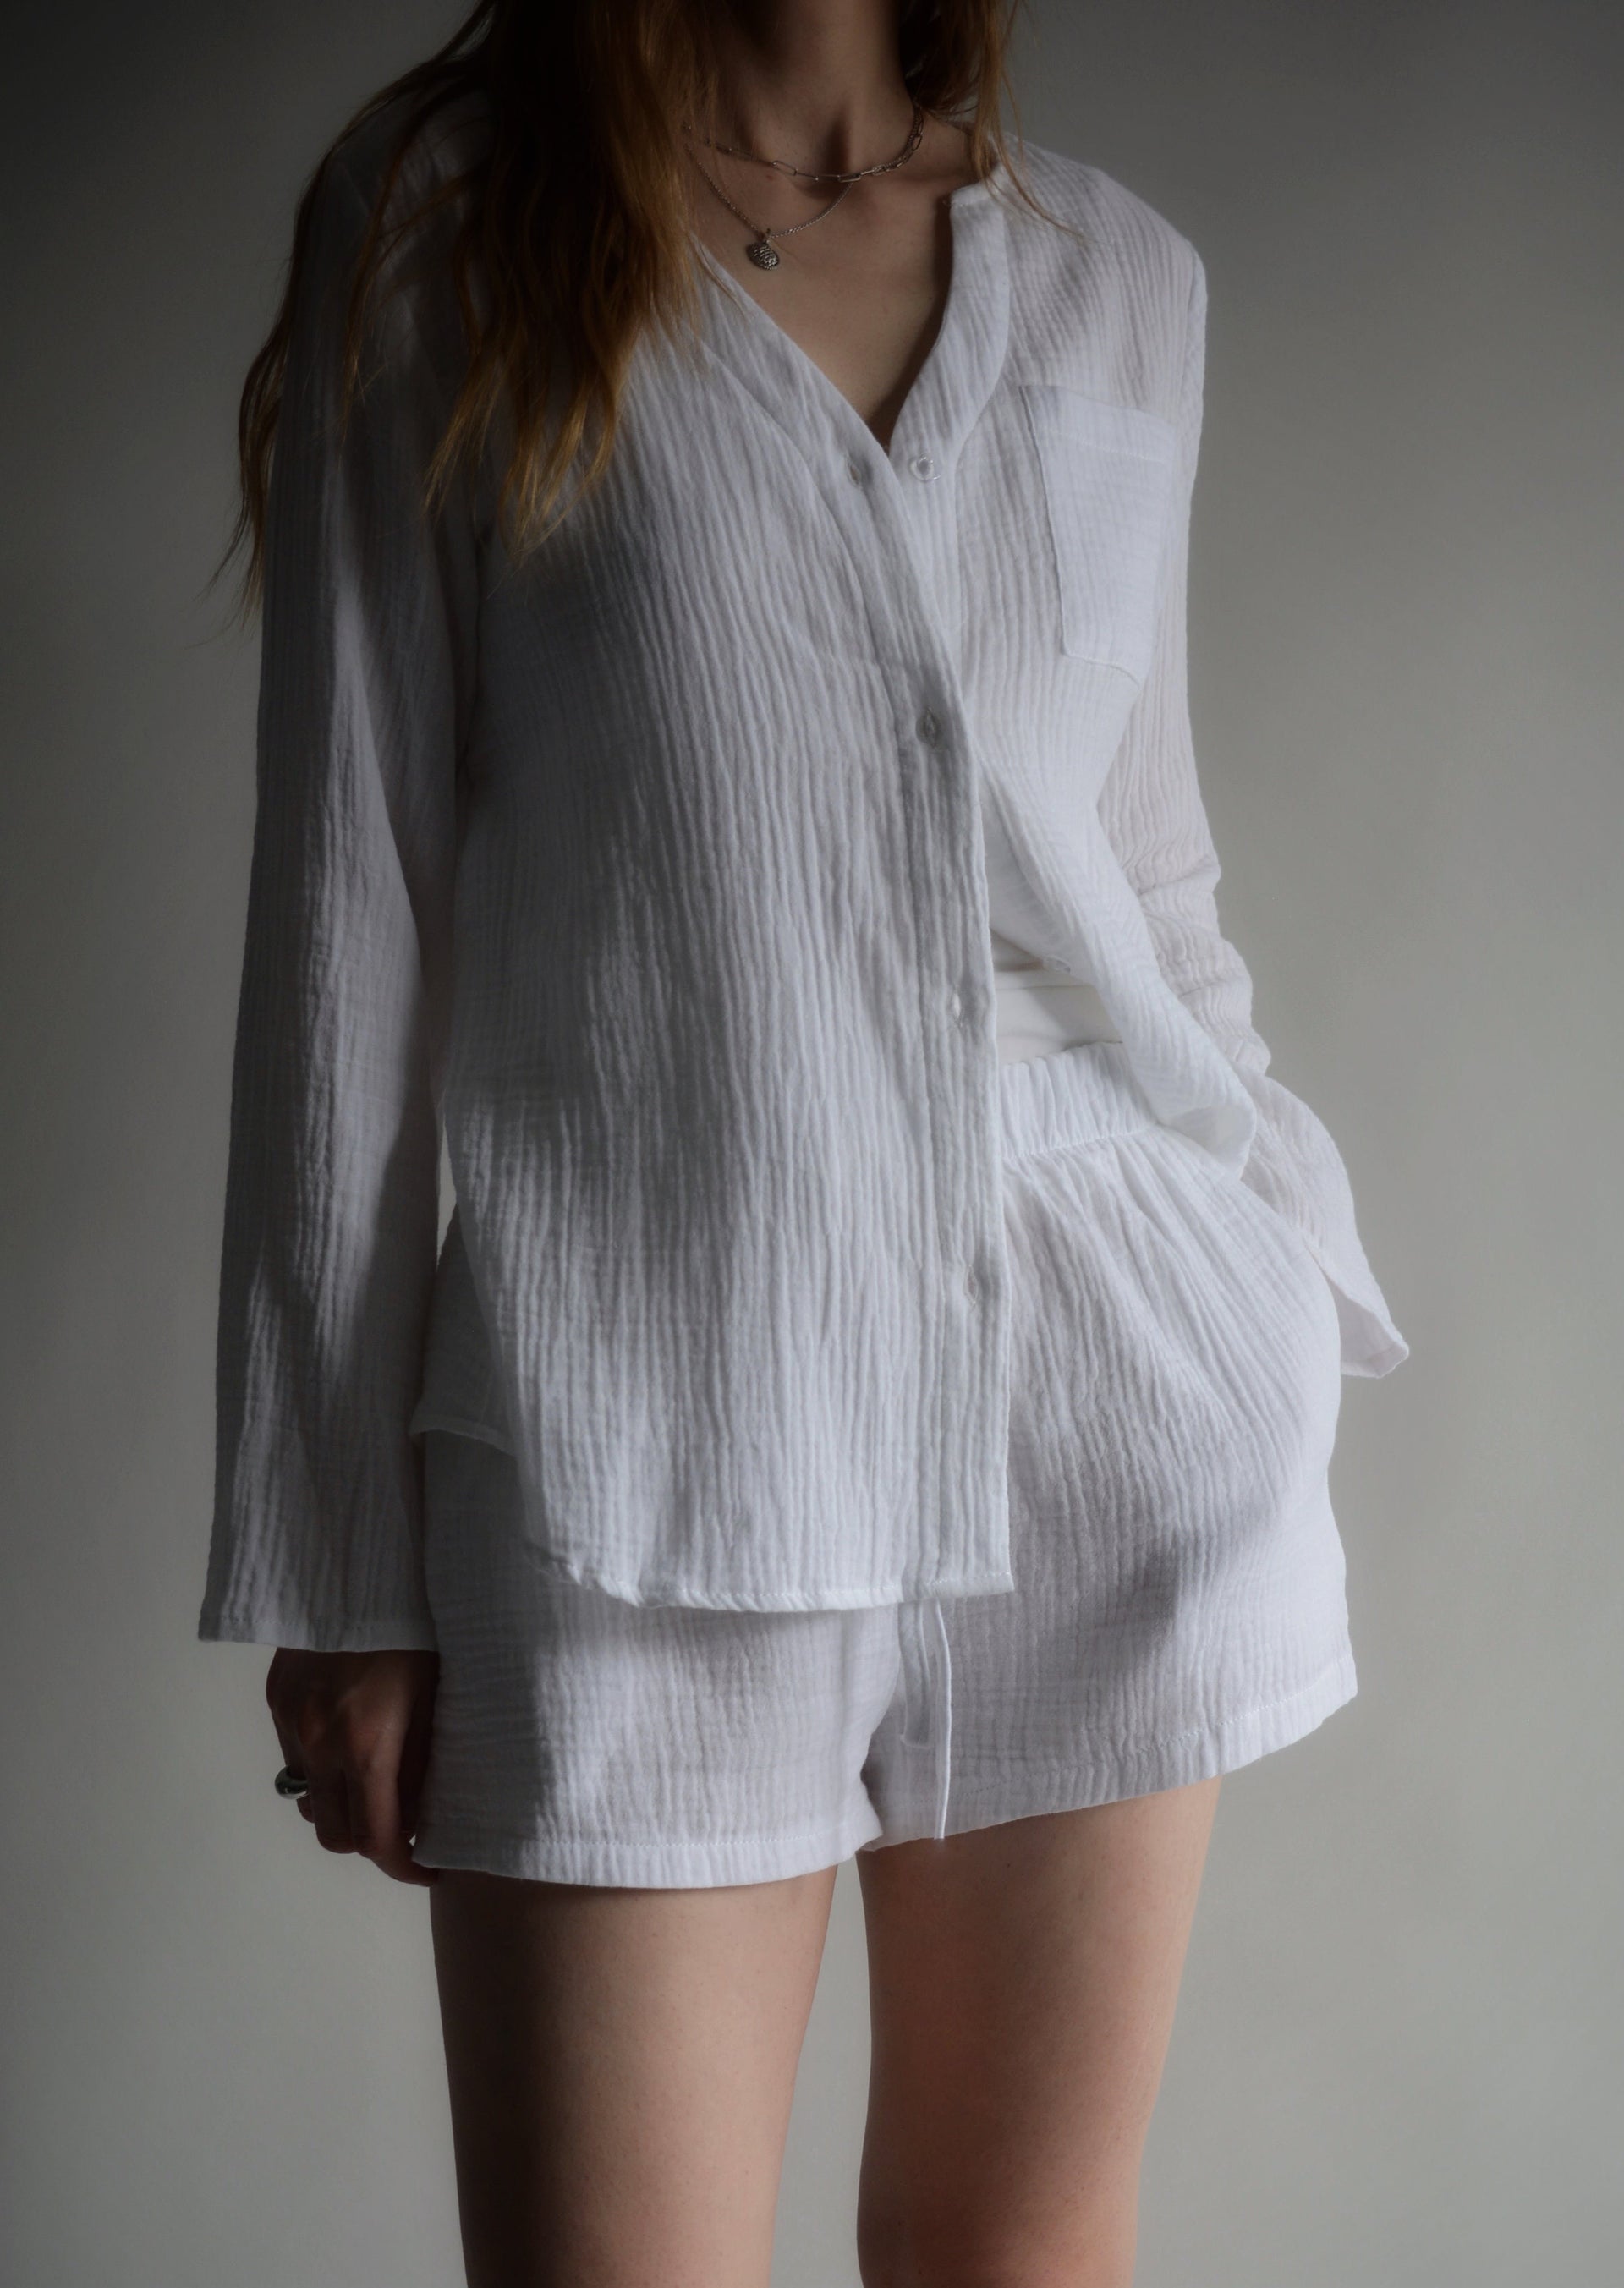 Cotton Muslin Sleepwear Set in White color – Moon Mountain